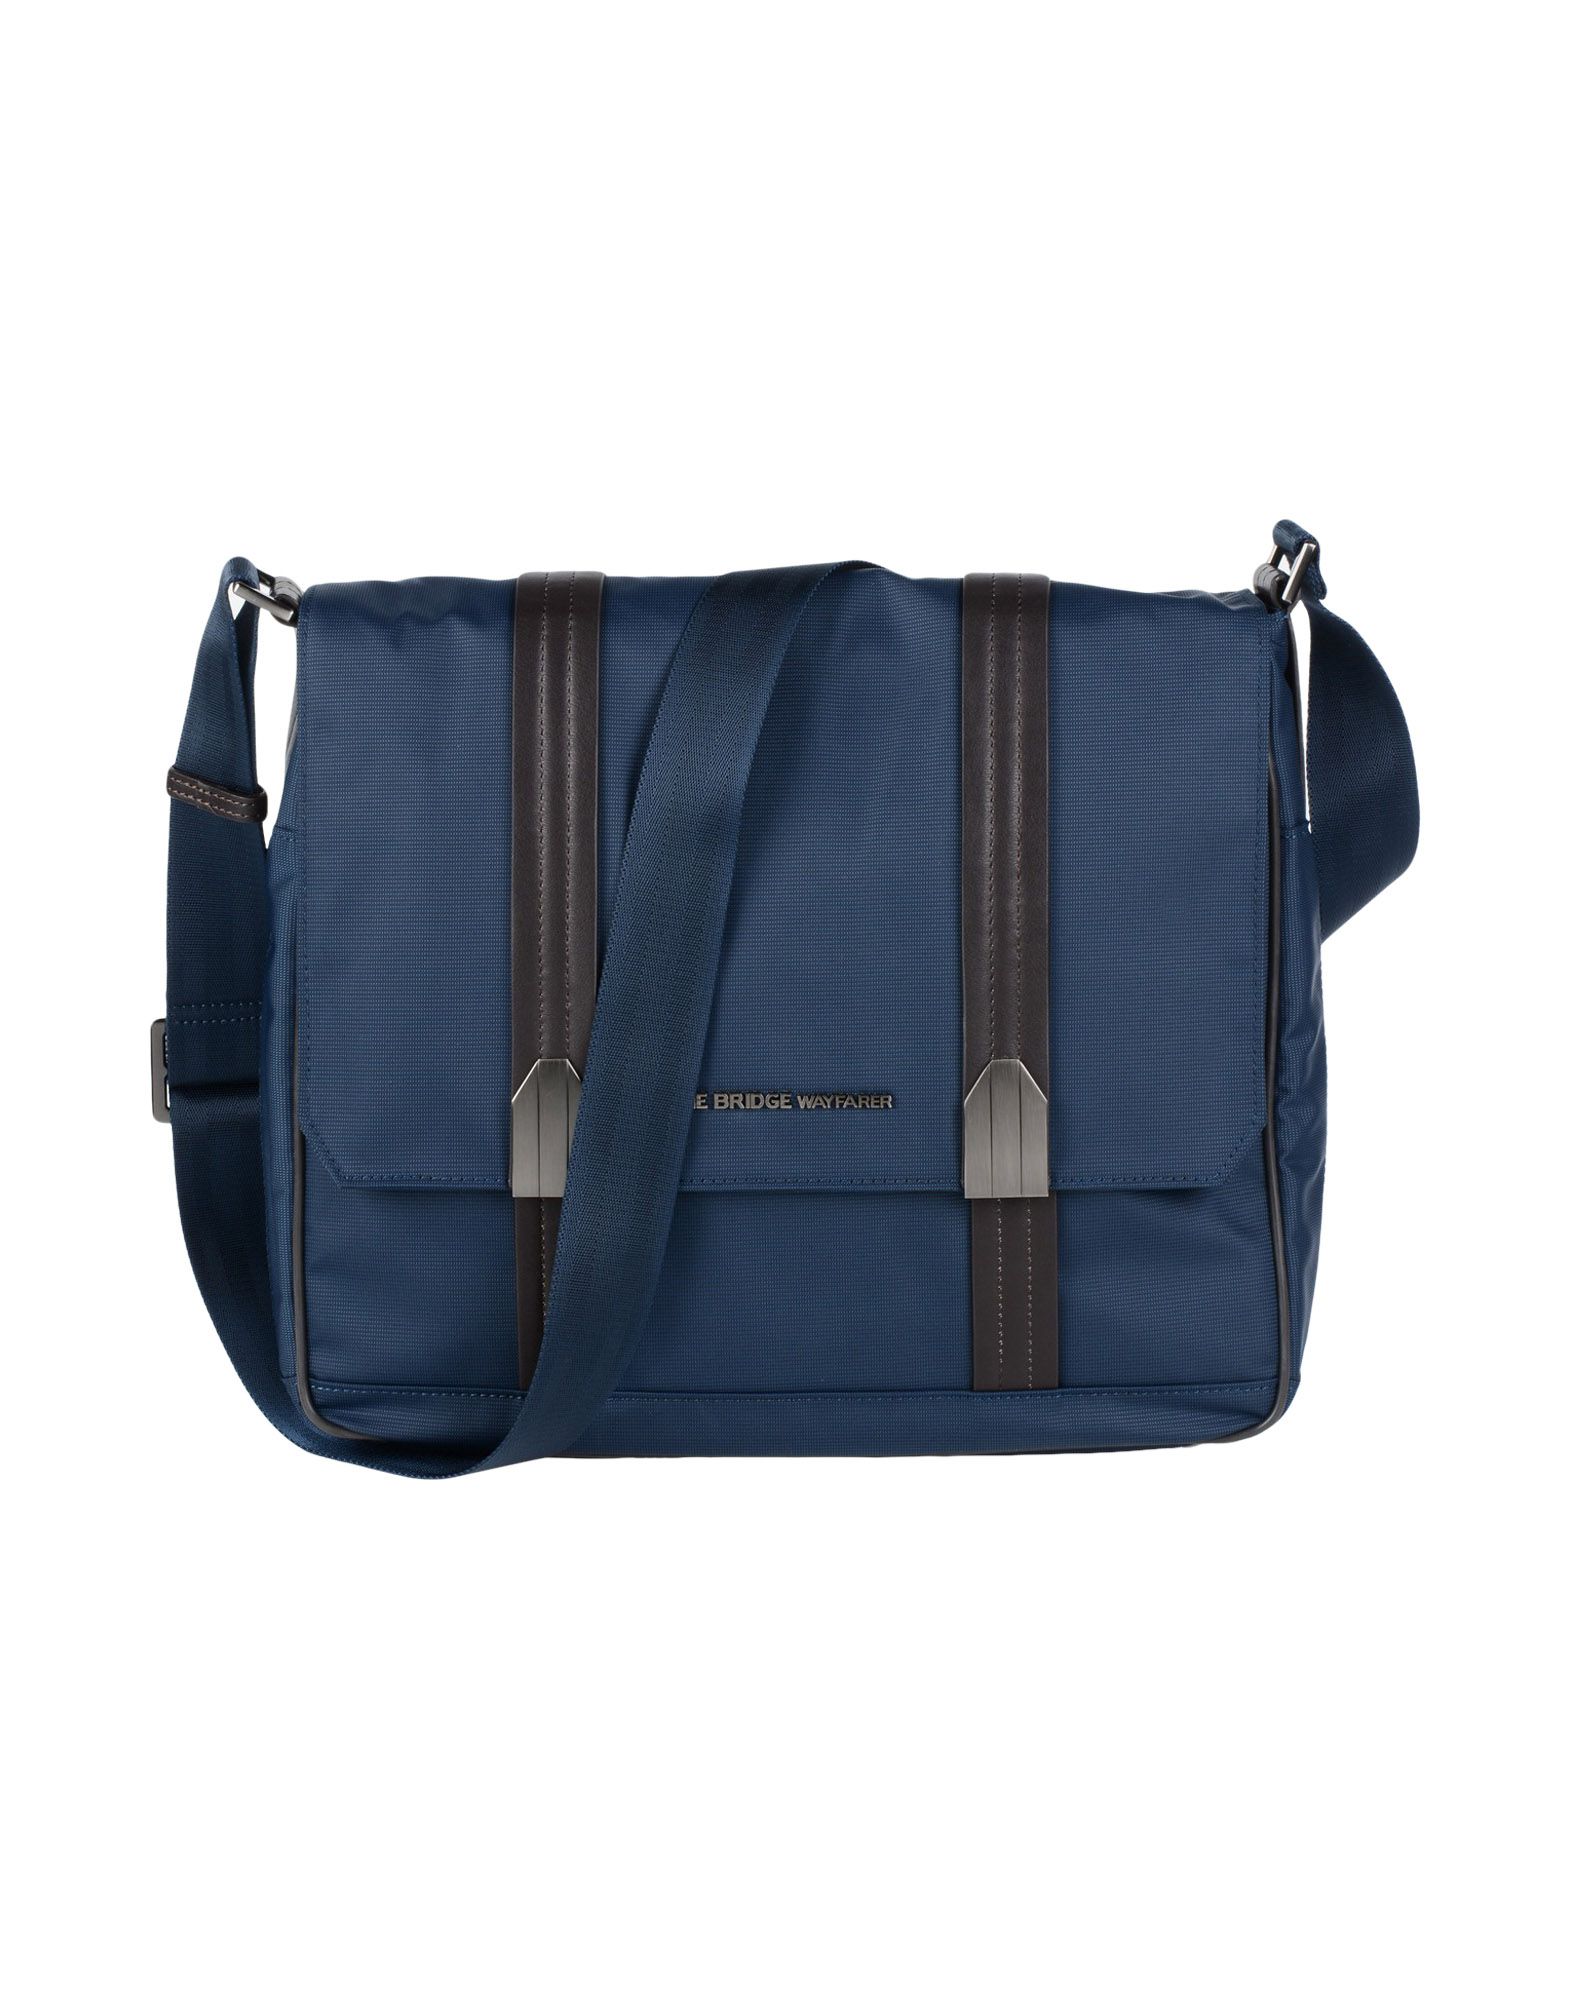 Деловая сумка  - Коричневый,Синий цвет